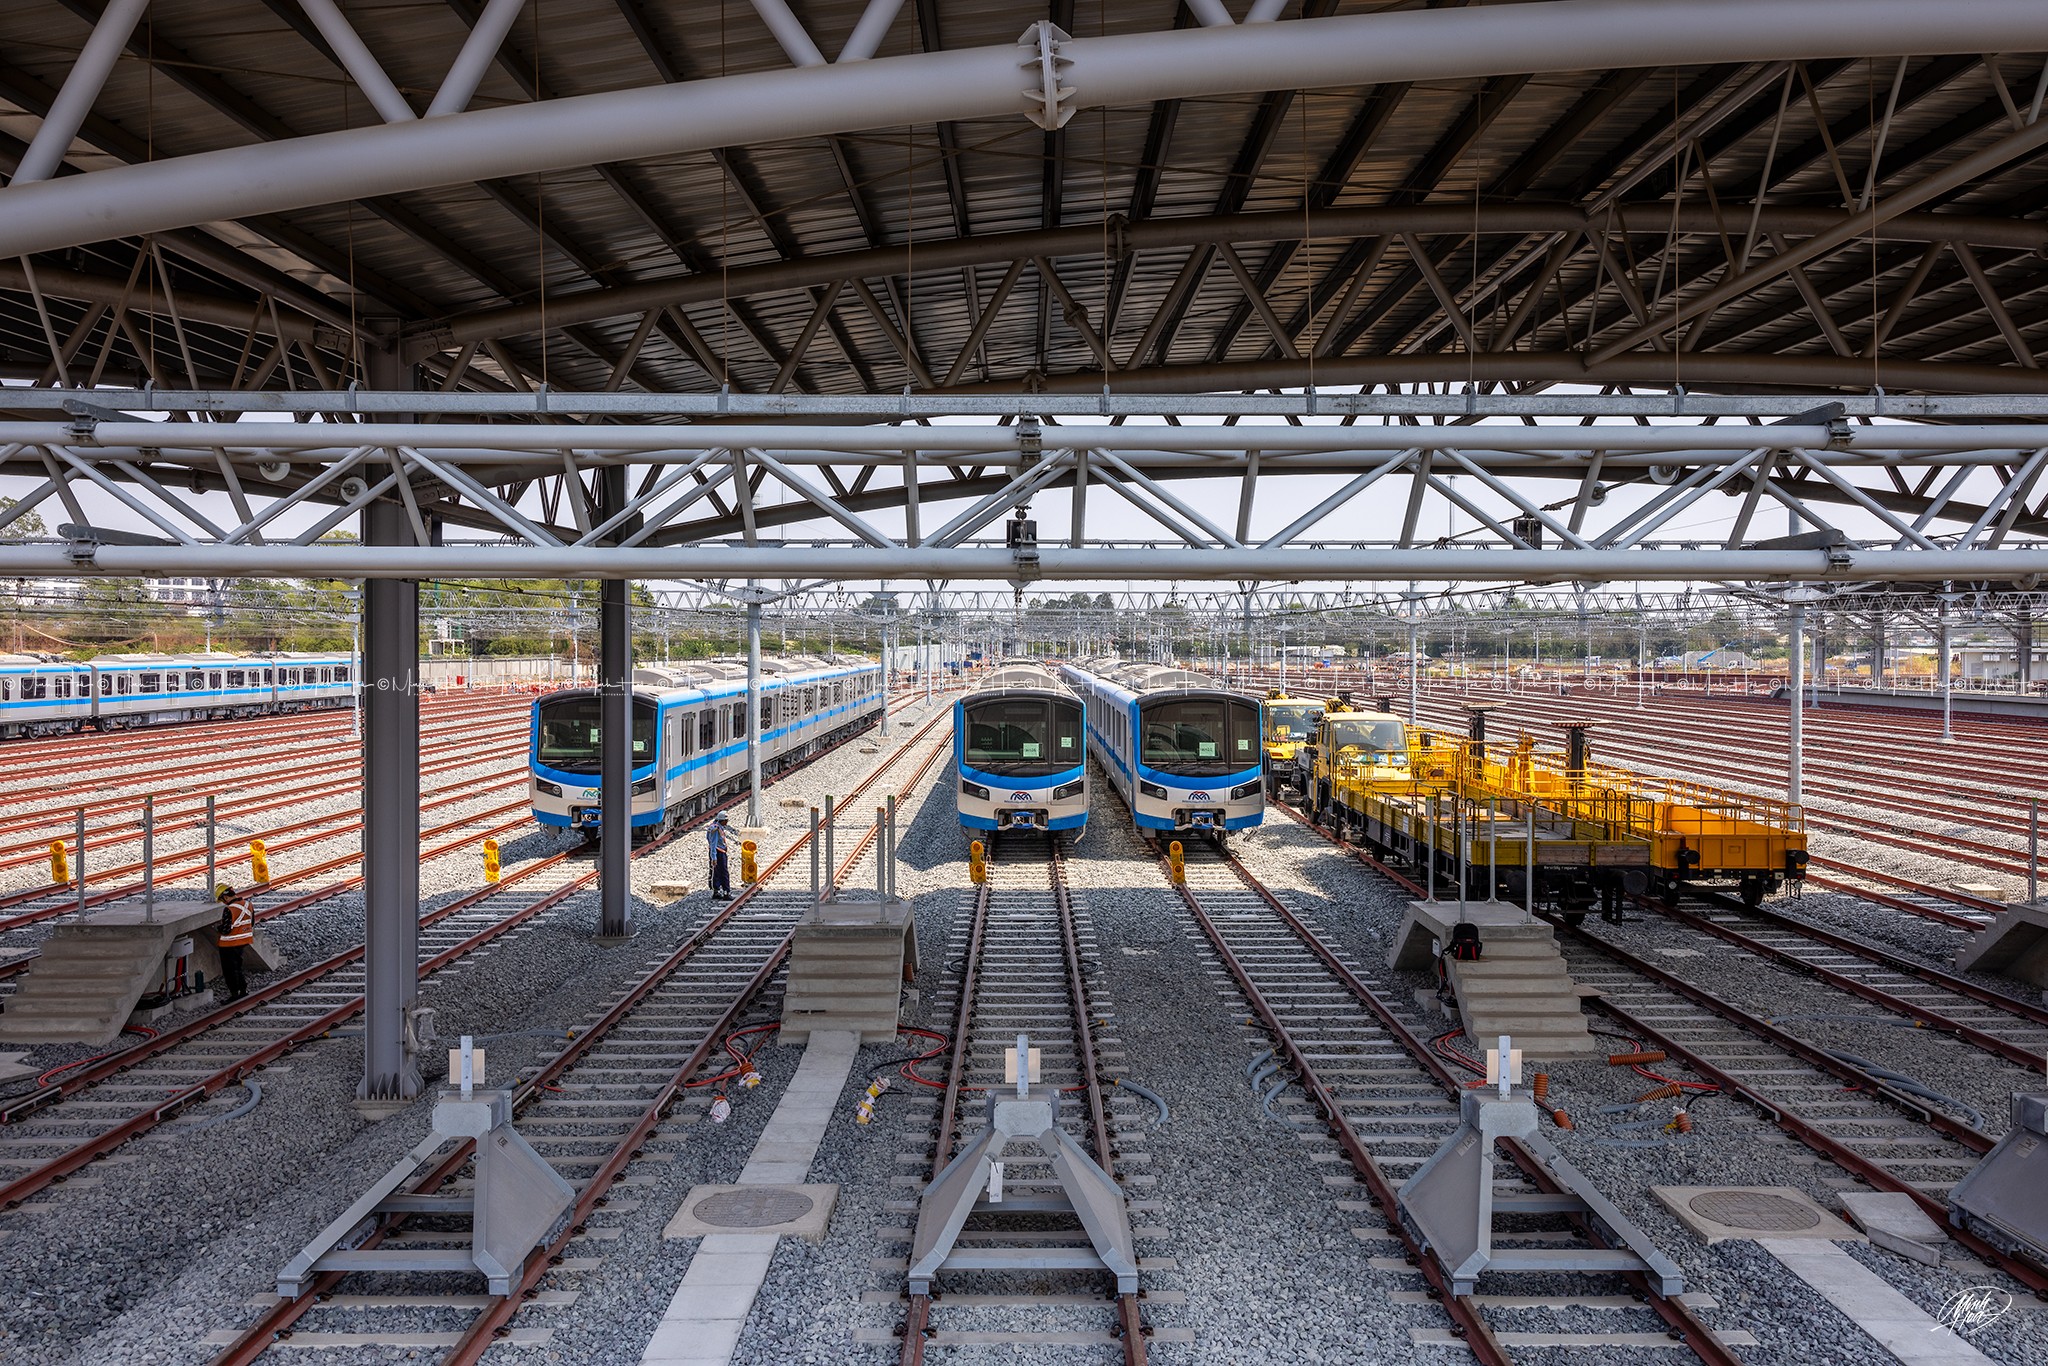 Tuyến metro số 1 có tổng cộng 17 đoàn tàu, mỗi đoàn gồm 3 toa xe với chiều dài đoàn xe là 61,5m, tốc độ thiết kế 110 km/giờ đối với đoạn trên cao và 80 km/giờ với đoạn hầm. Hiện các đoàn tàu đang được tập kết tại Depot Long Bình